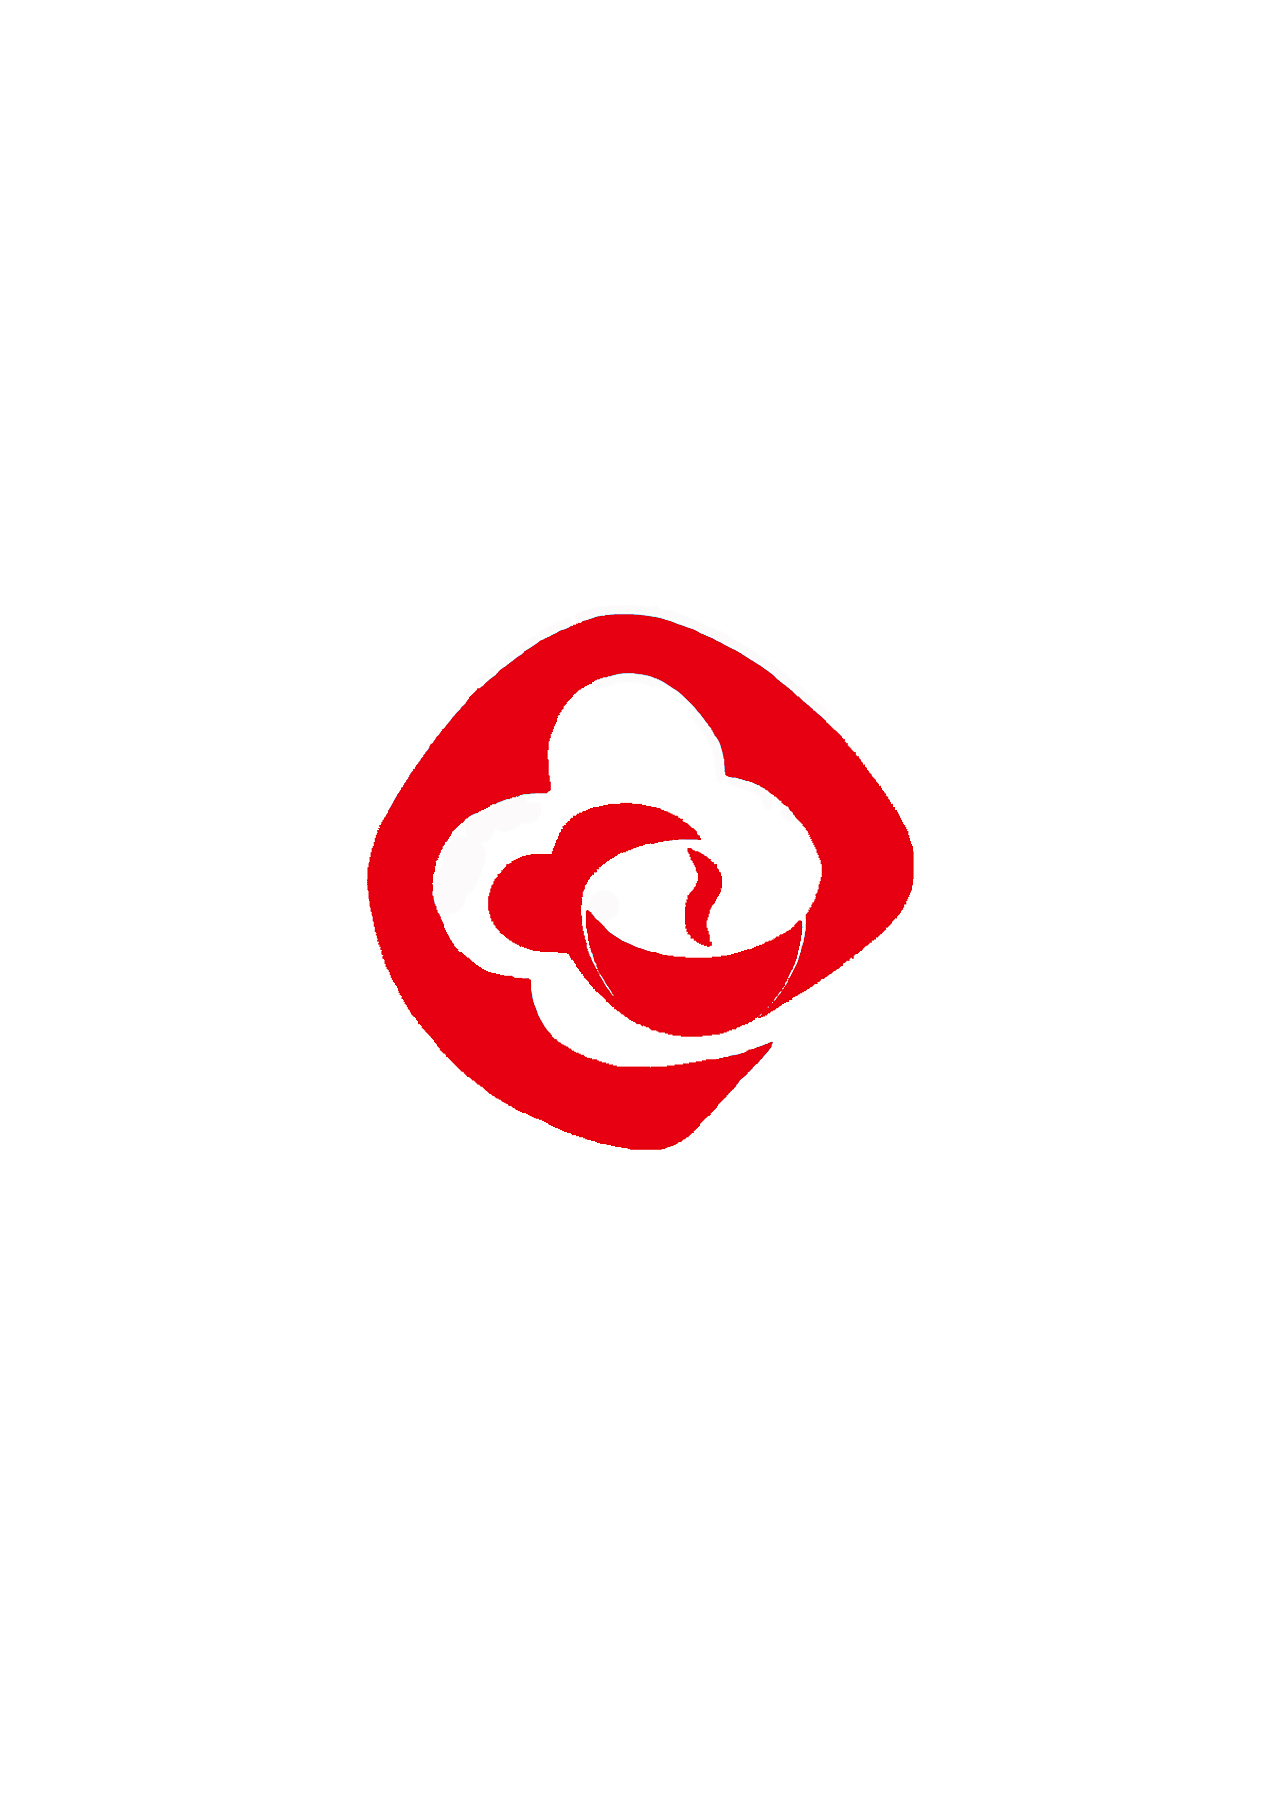 彩云之南logo图片